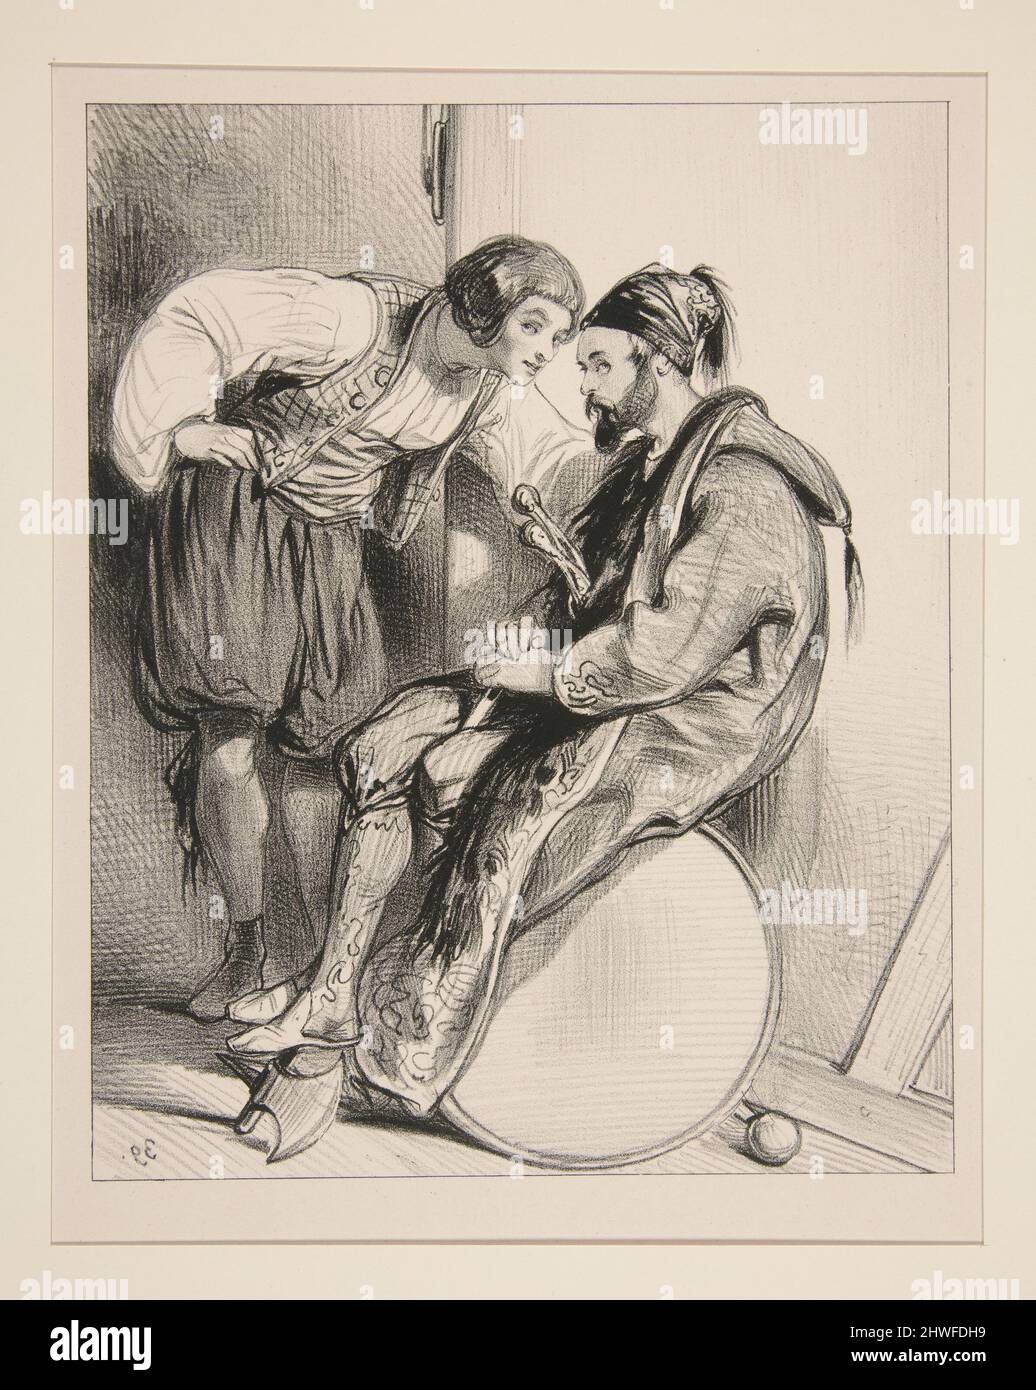 (Le Villageois) Qu’aimes-tu mieux de la jambe d’Irma ou…. Artista: Paul Gavarni, francese, 1804–1866 Foto Stock